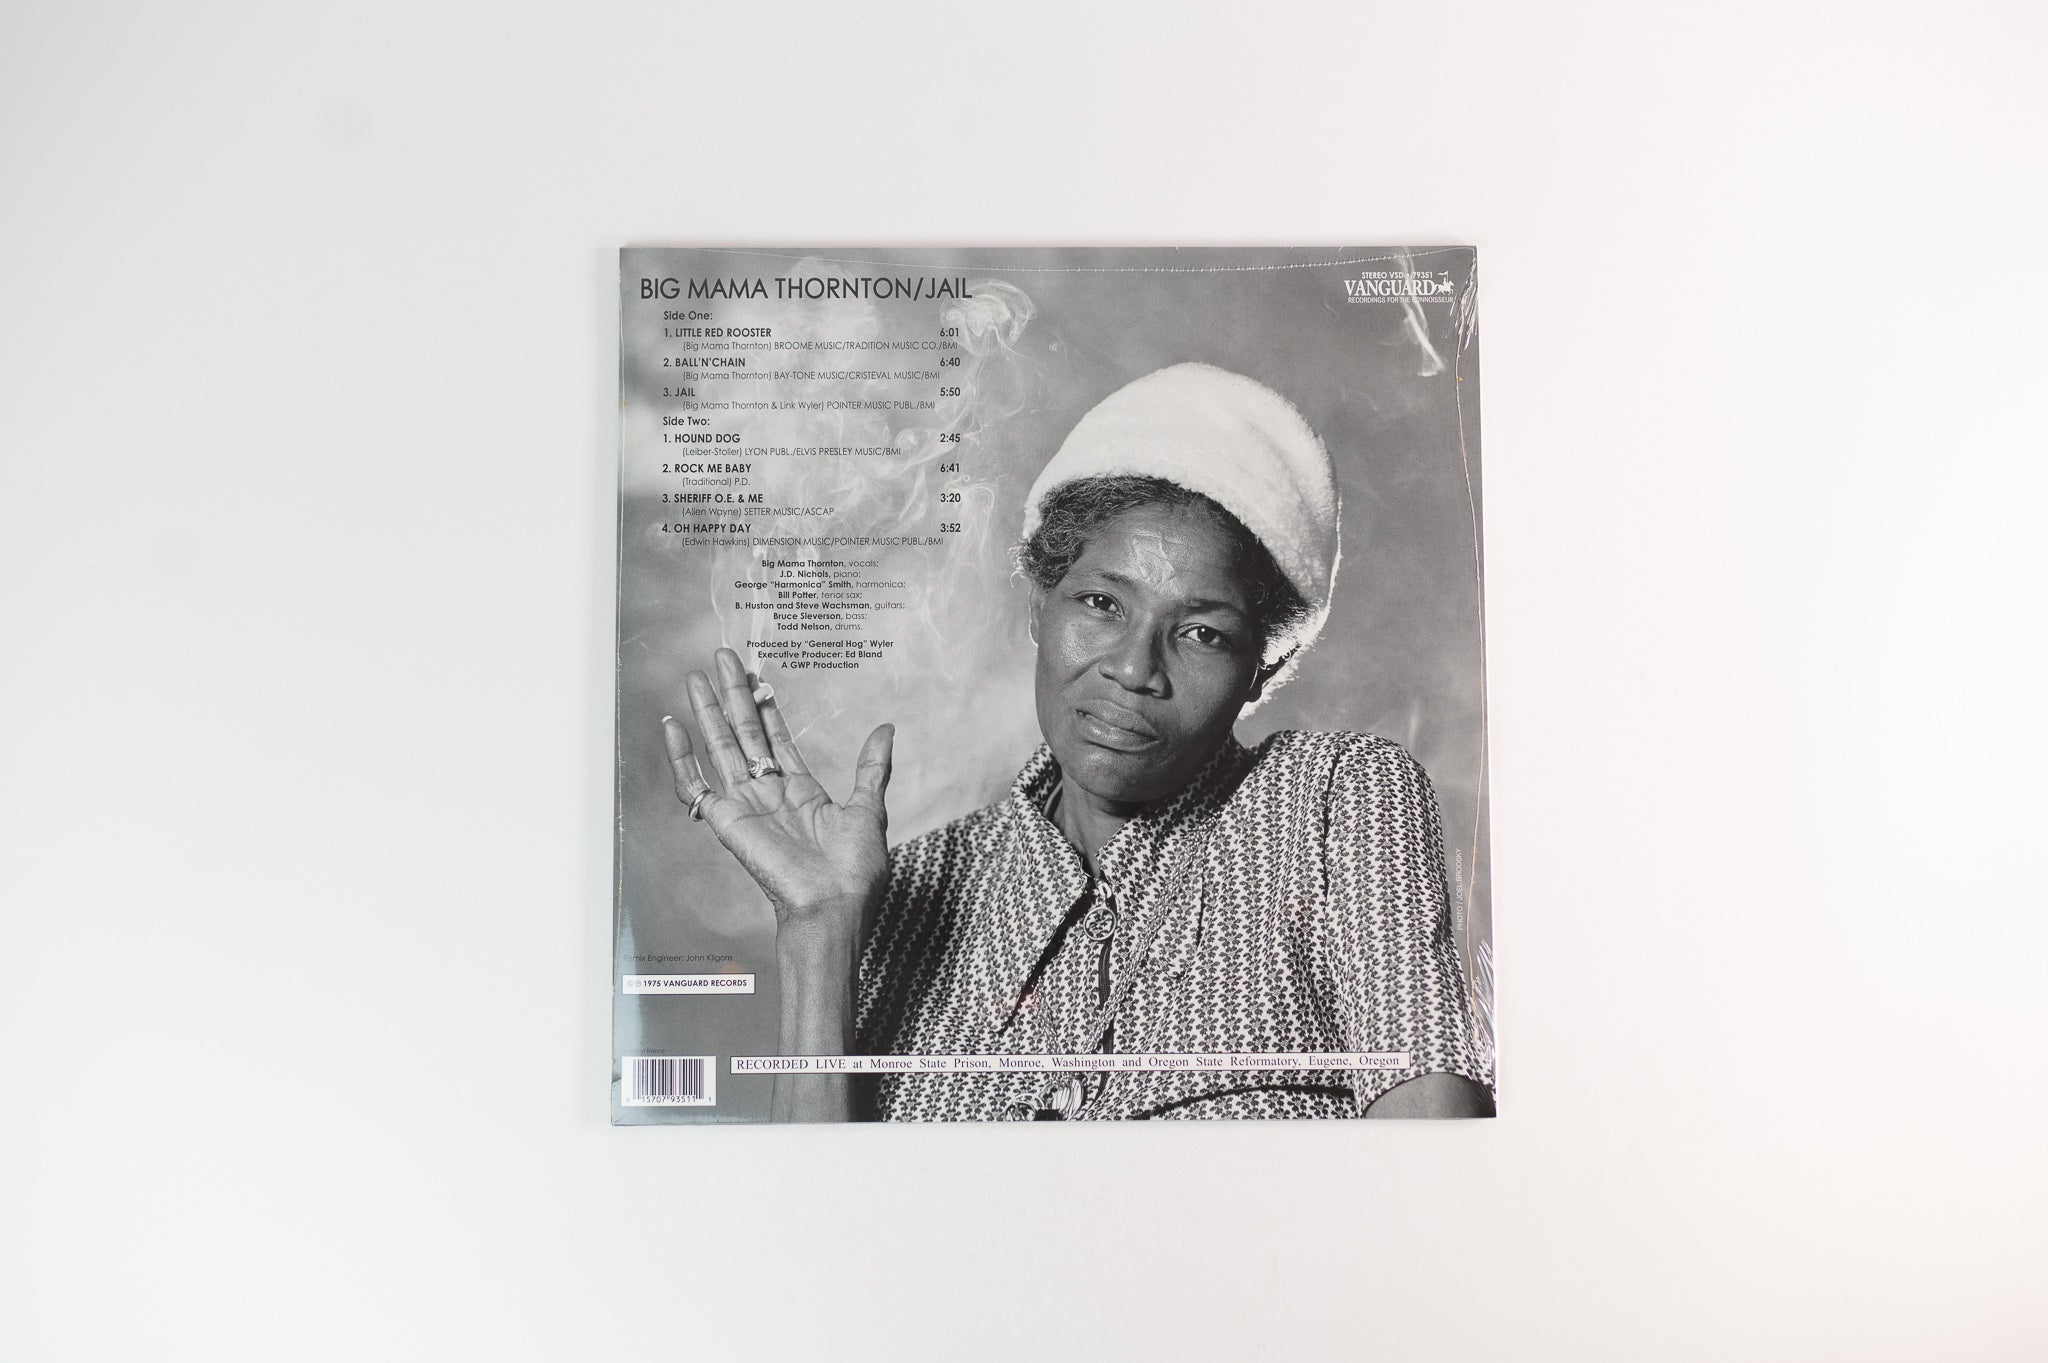 Big Mama Thornton - Jail on Vanguard Reissue Sealed